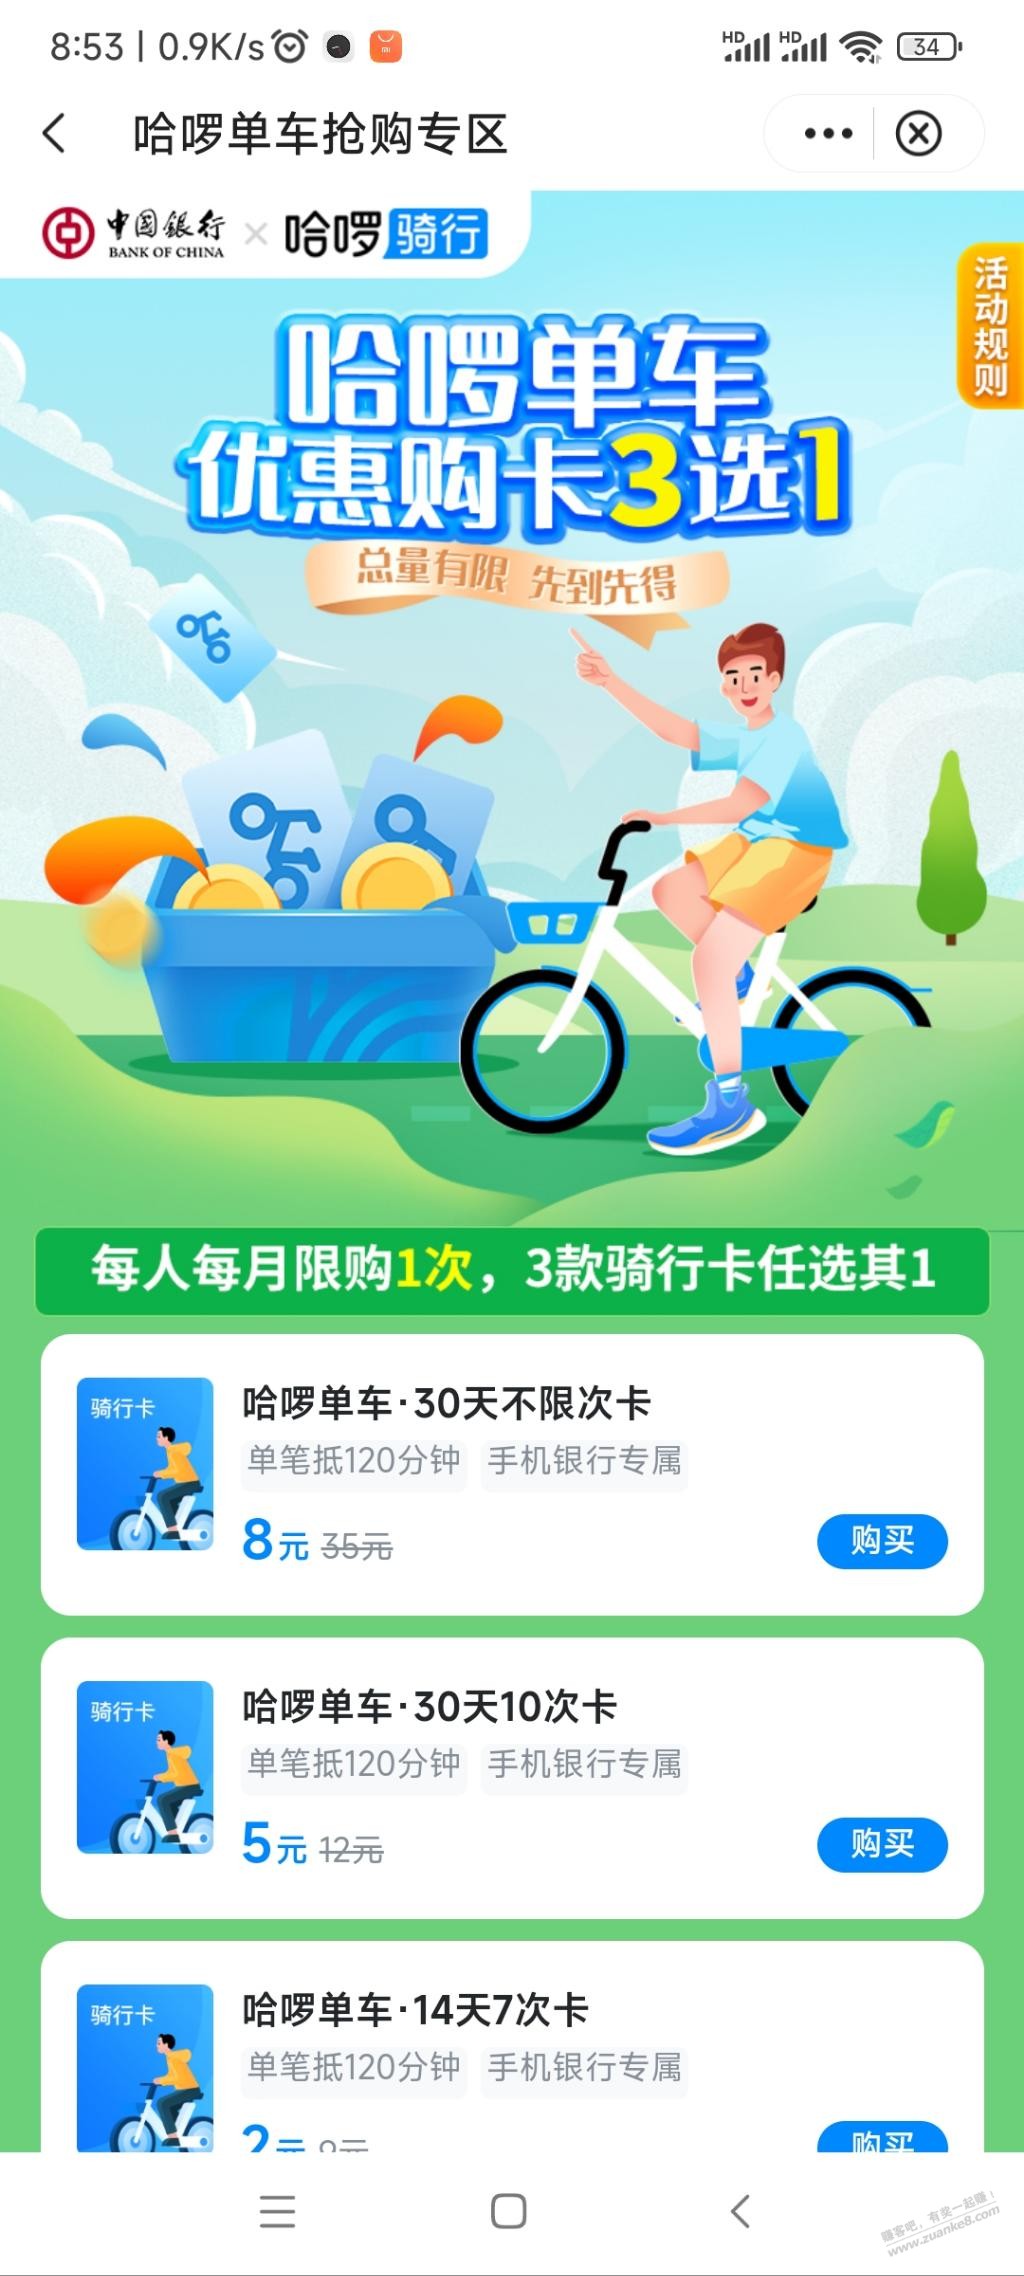 中行app 生活 哈罗单车月卡8元 好用分享